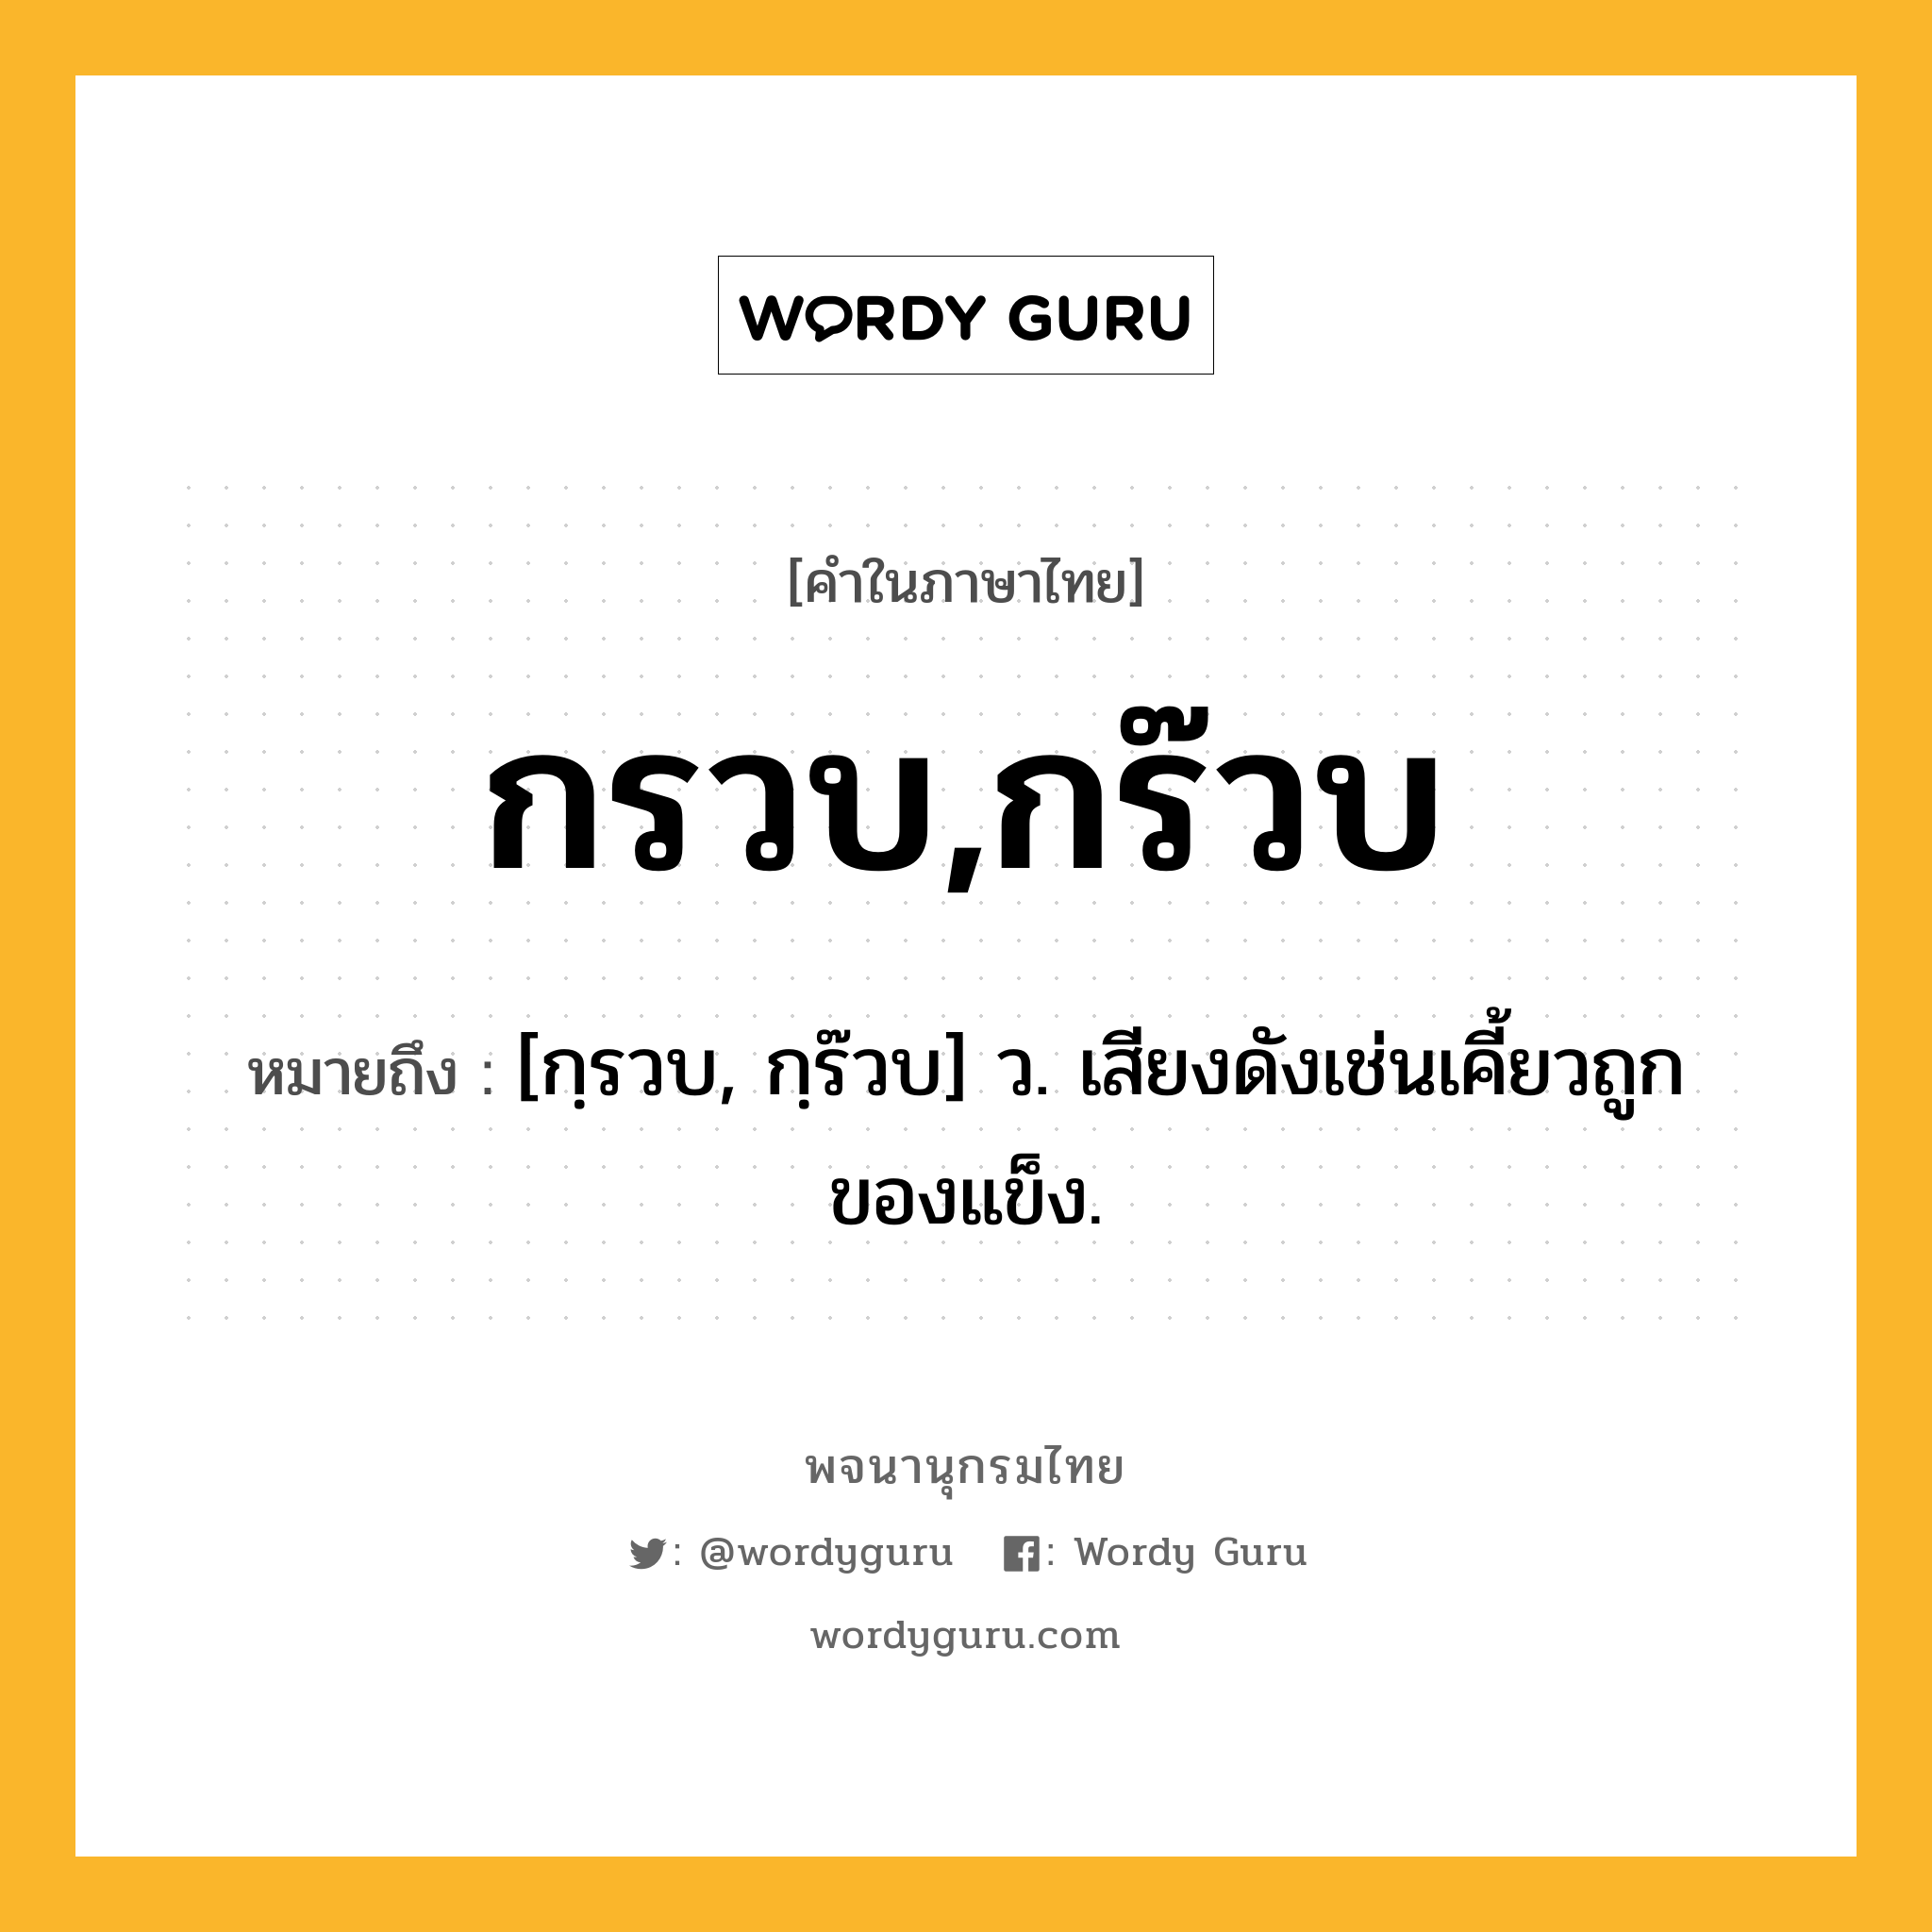 กรวบ,กร๊วบ ความหมาย หมายถึงอะไร?, คำในภาษาไทย กรวบ,กร๊วบ หมายถึง [กฺรวบ, กฺร๊วบ] ว. เสียงดังเช่นเคี้ยวถูกของแข็ง.